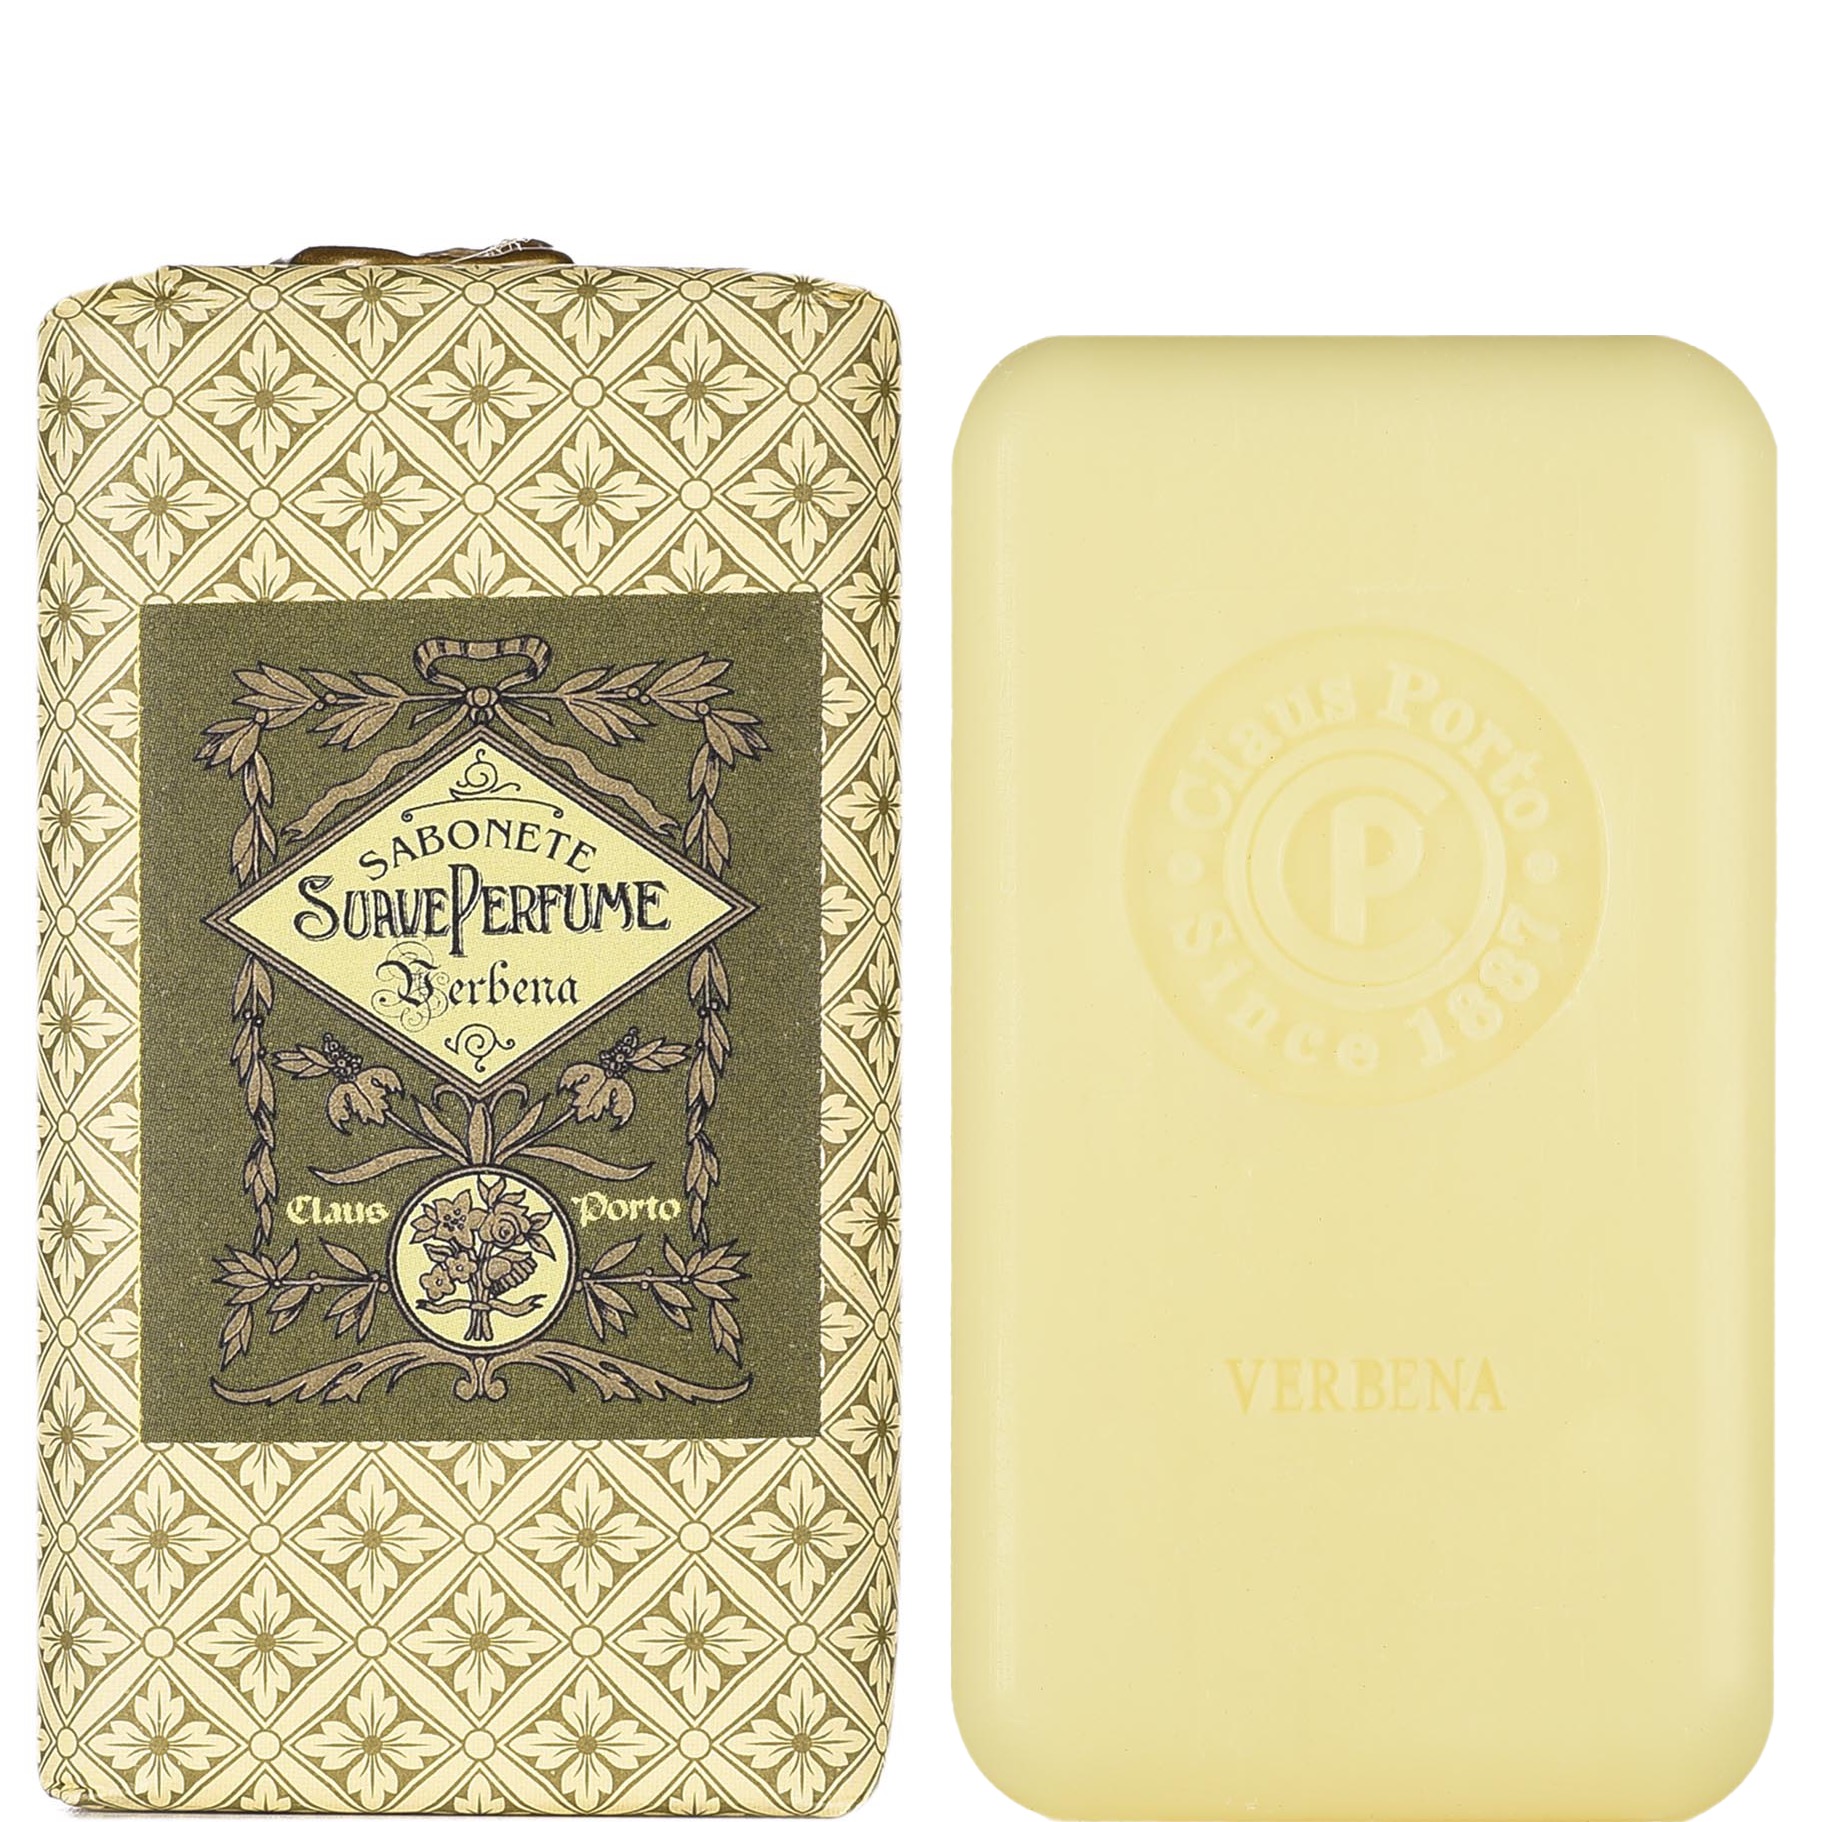 Claus Porto Soap Bar Suave Perfume Verbena 150g - 1.1 - CP-C008W